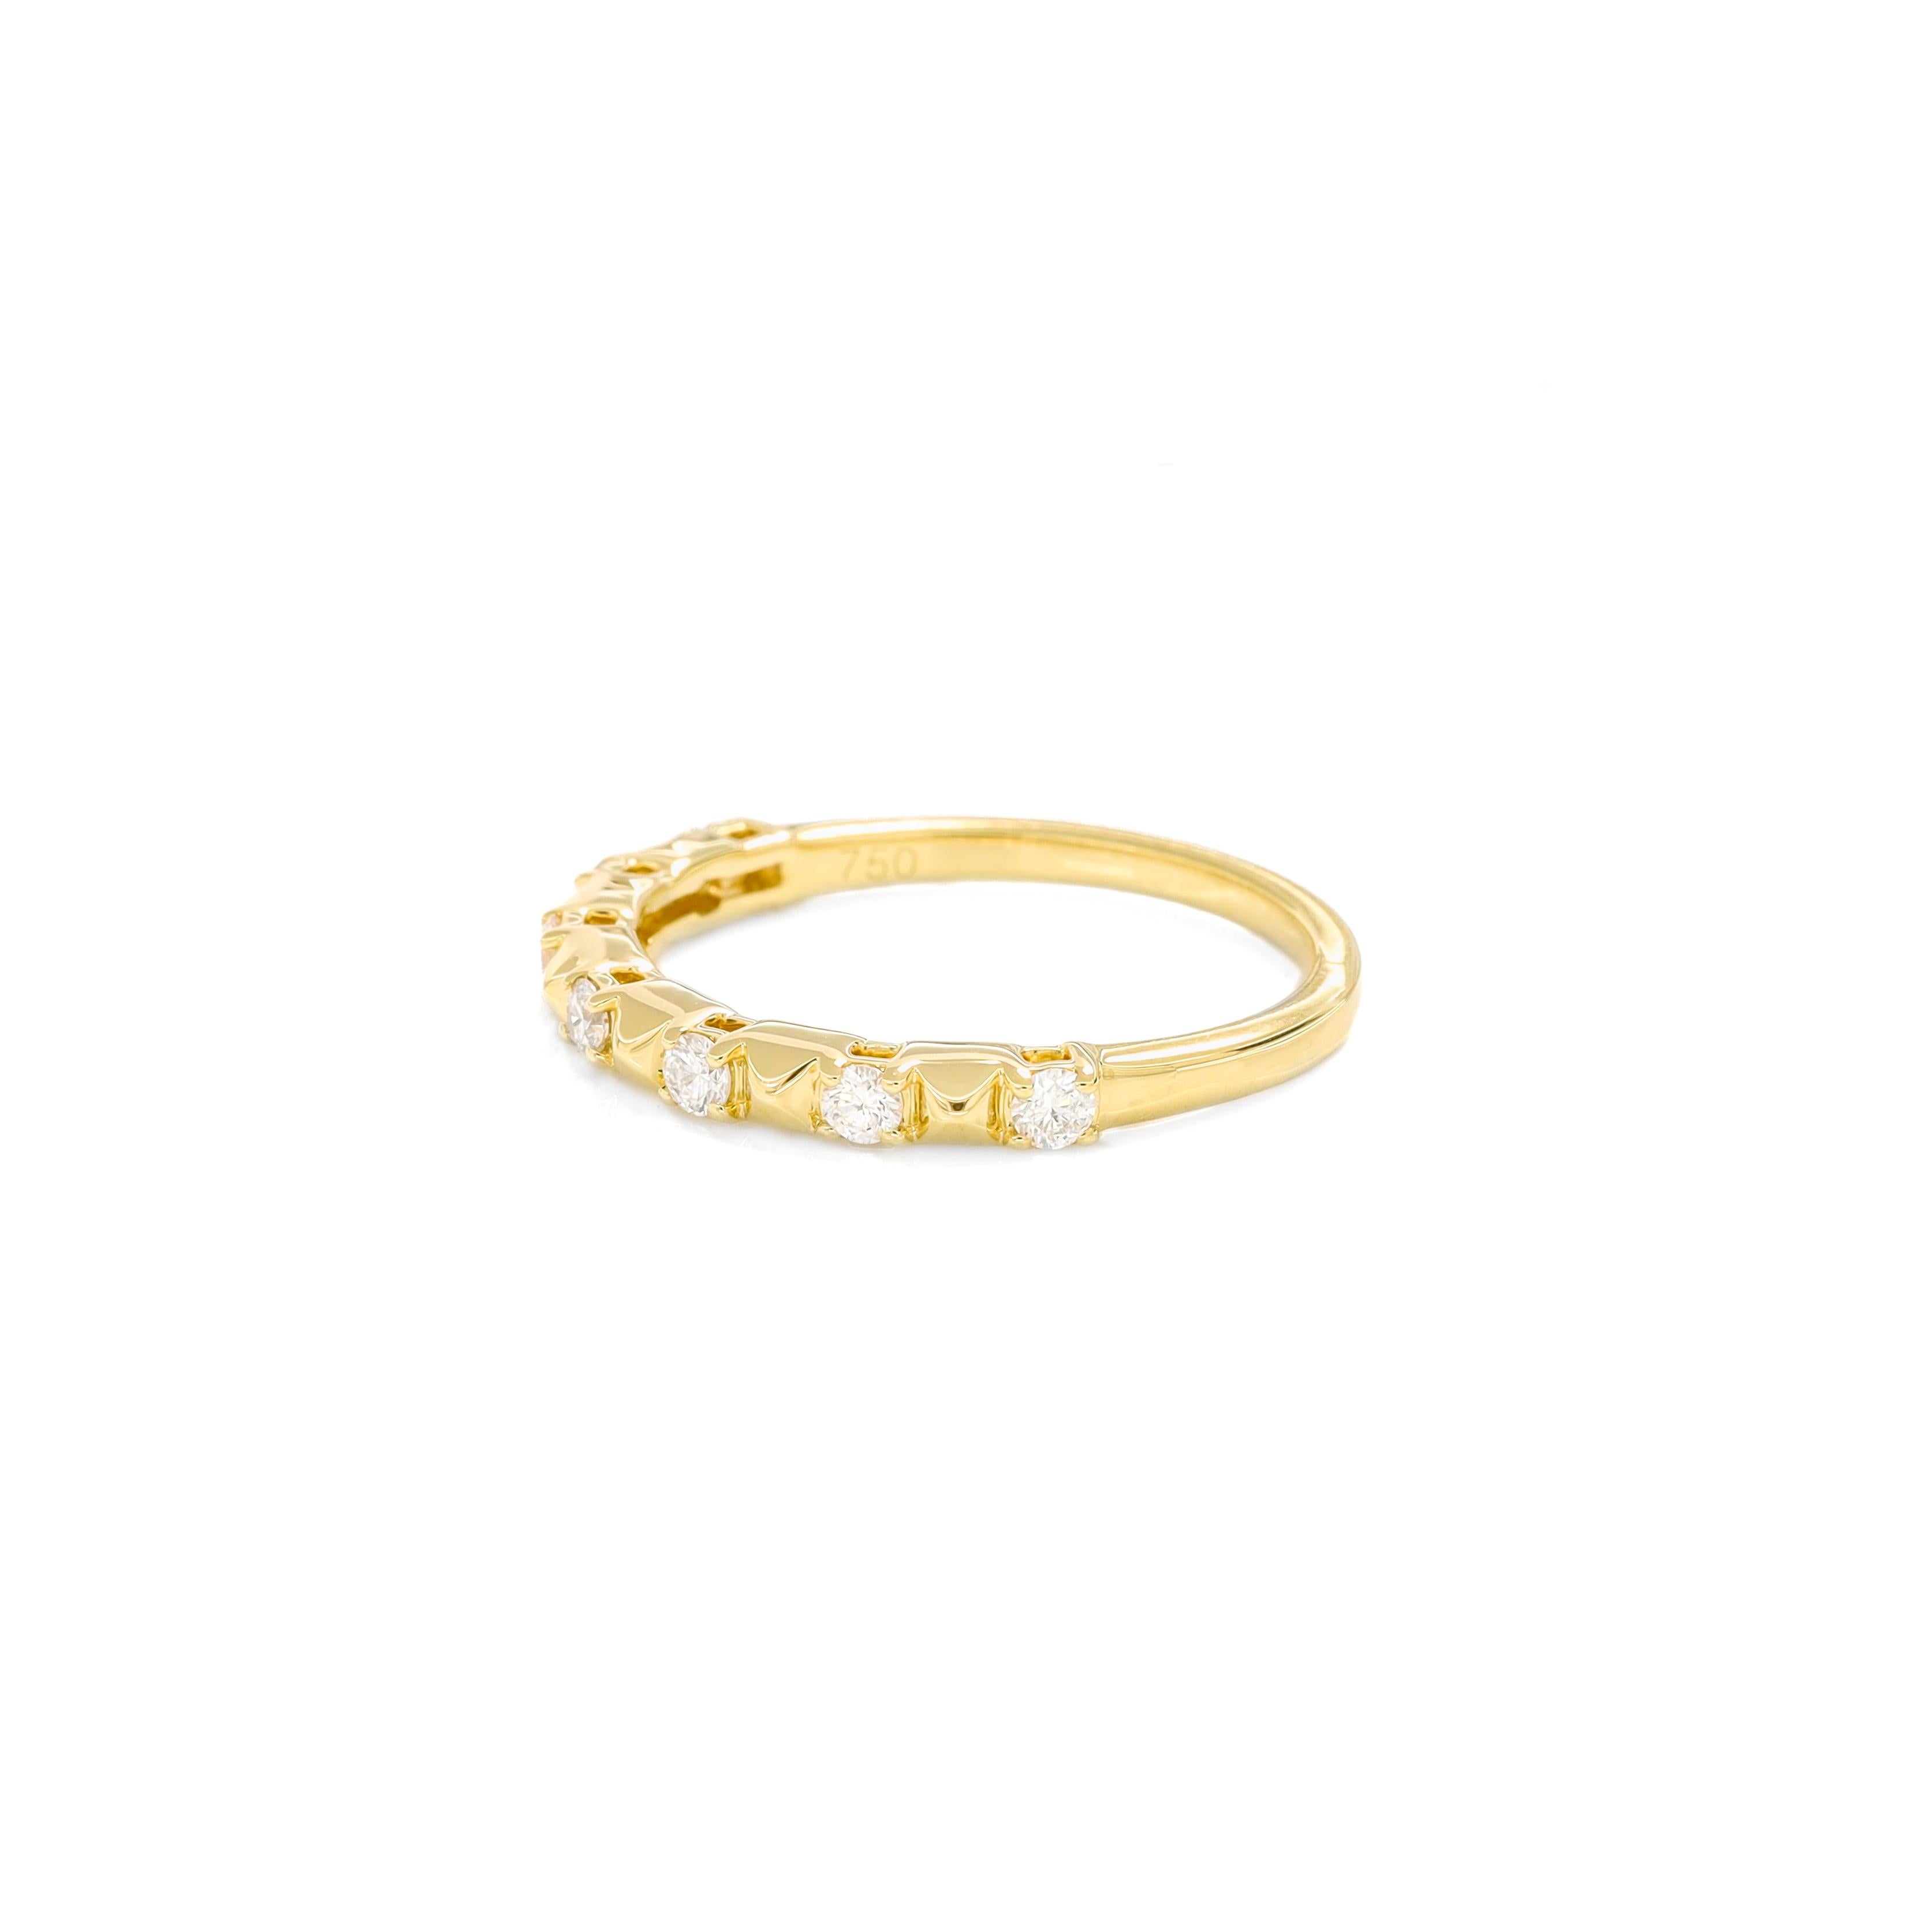 Das Herzstück des Rings ist eine Reihe runder Diamanten von insgesamt 0,25 Karat, die sorgfältig in die reiche Umarmung aus 18-karätigem Gelbgold gefasst sind. Die Zwischenräume zwischen den Diamanten sind mit texturierten Goldperlen verziert, die